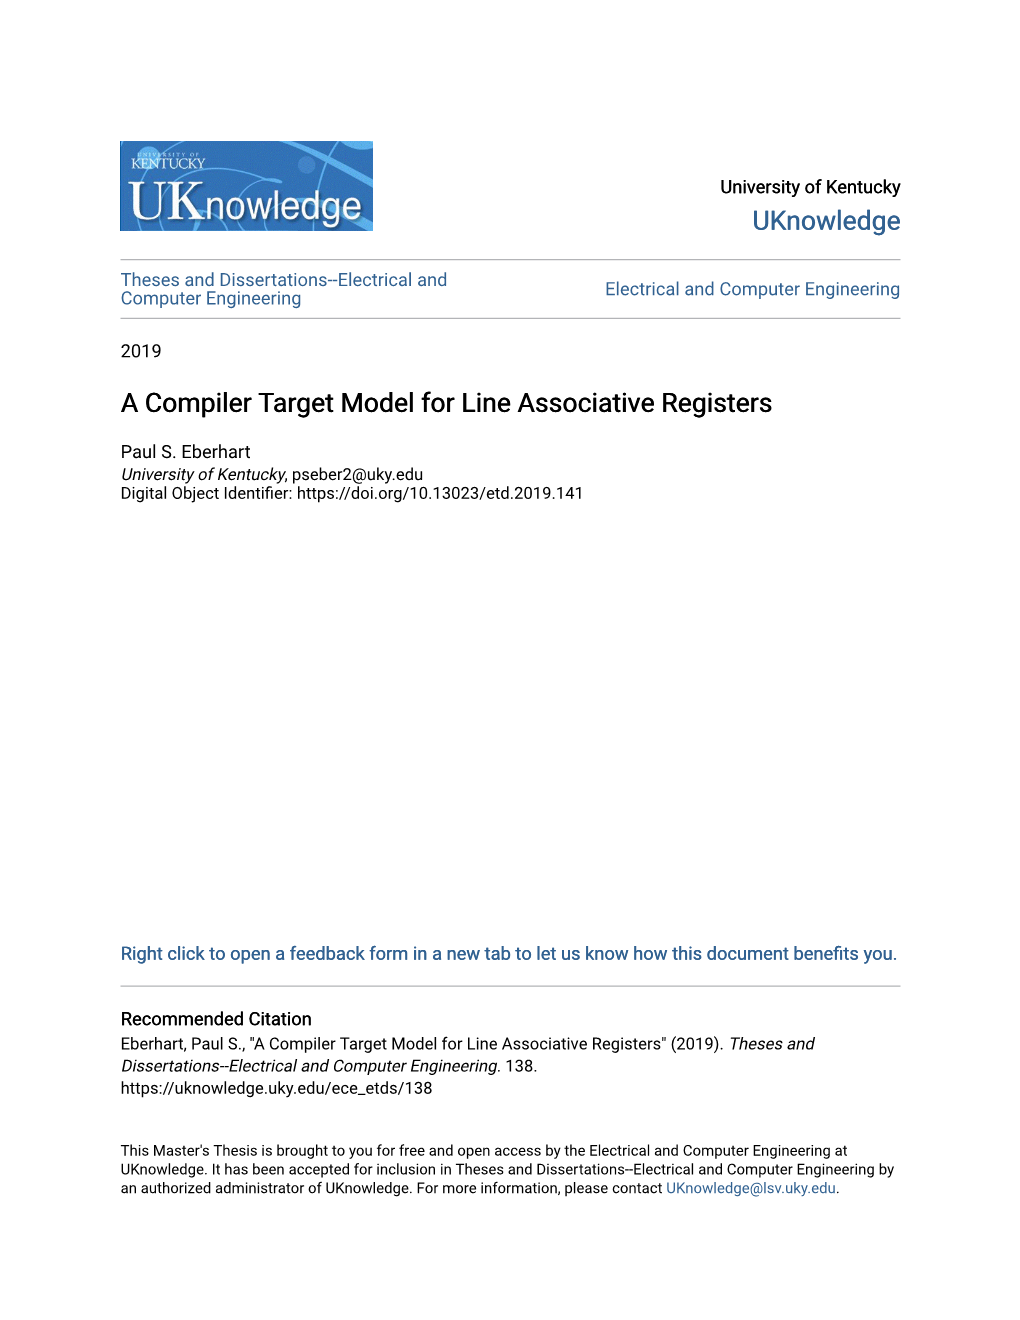 A Compiler Target Model for Line Associative Registers